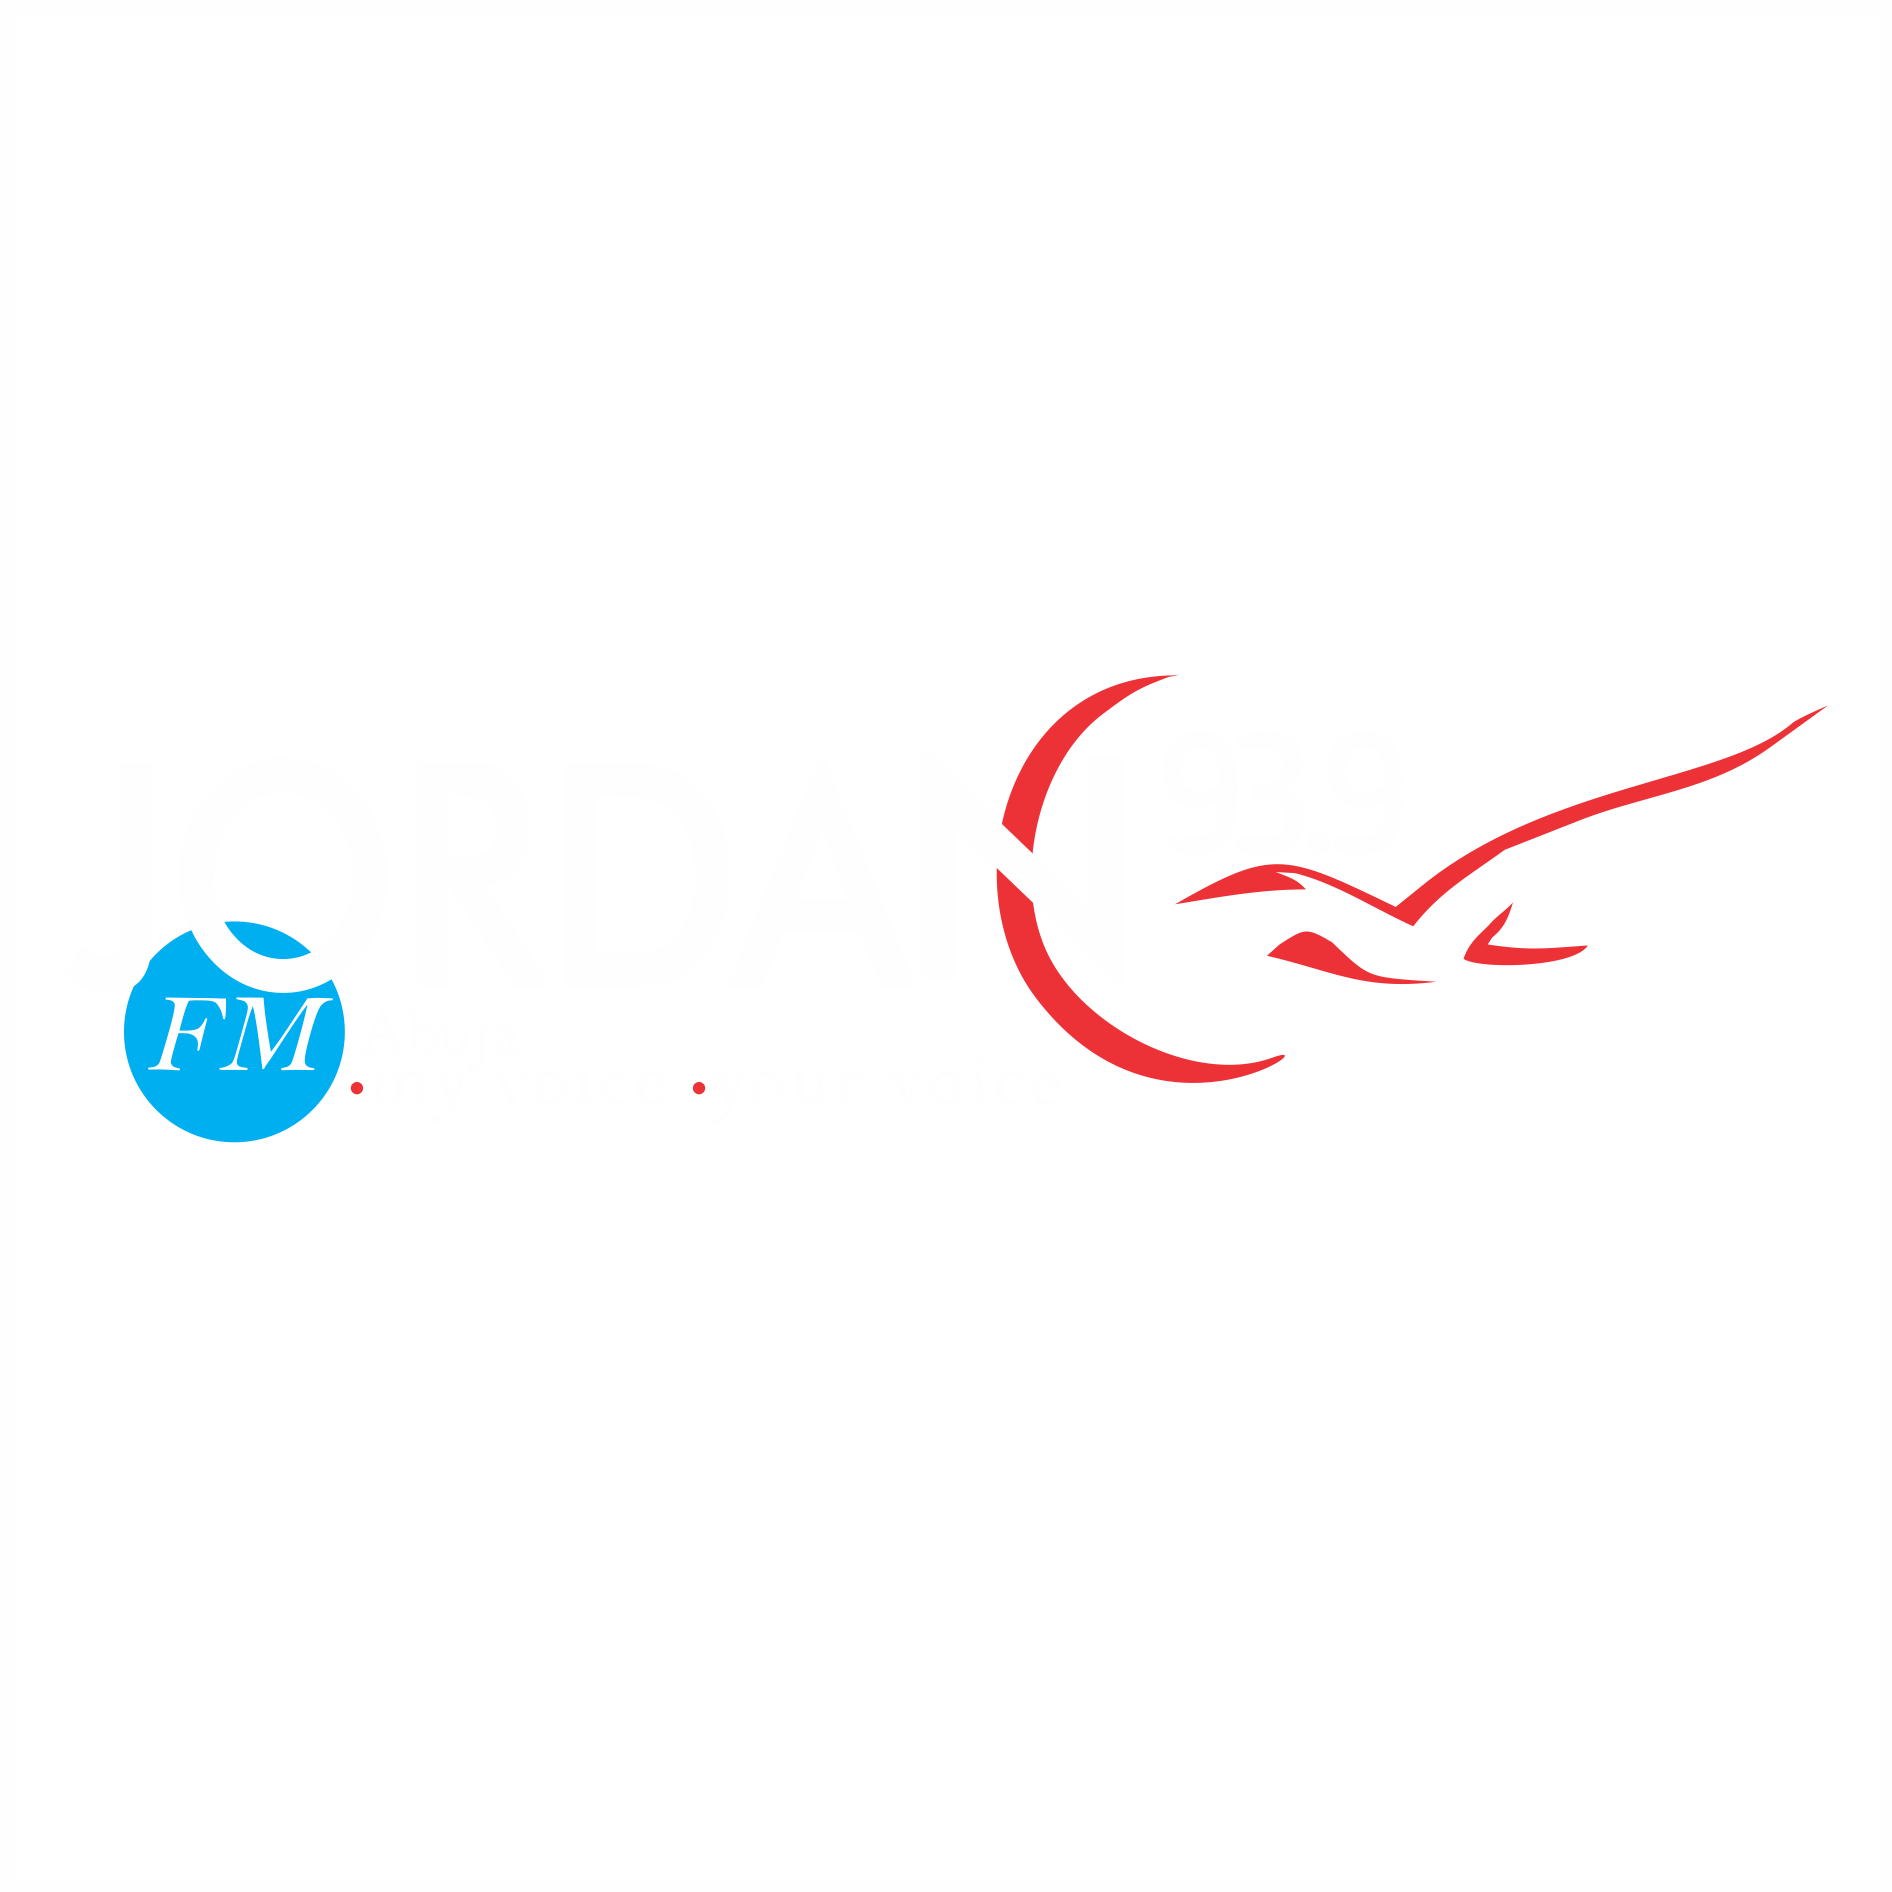 Jordan93.9FM